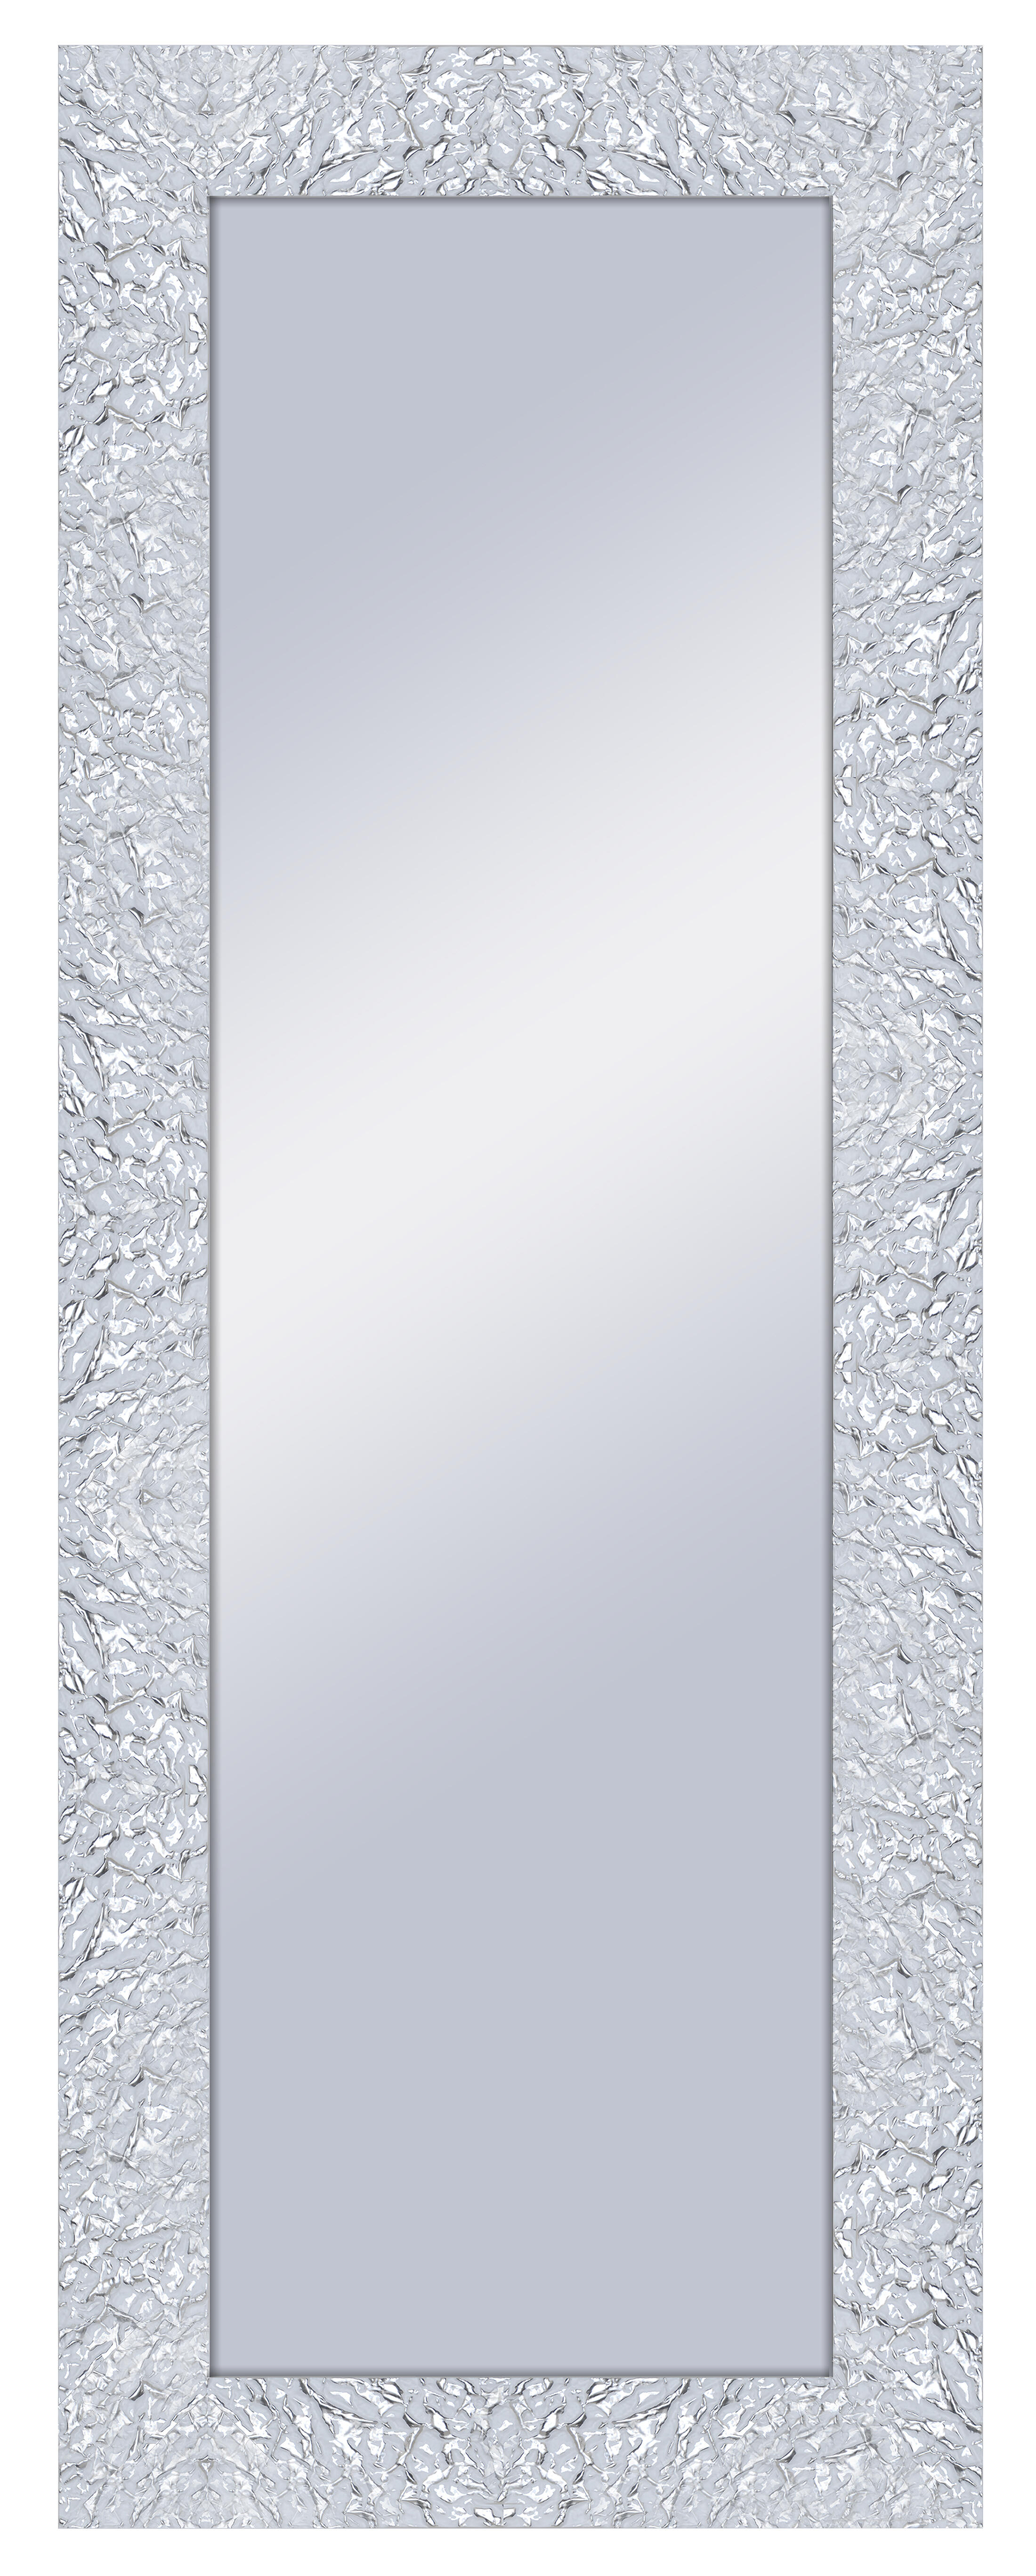 Espejo enmarcado rectangular adams blanco 159 x 59 cm